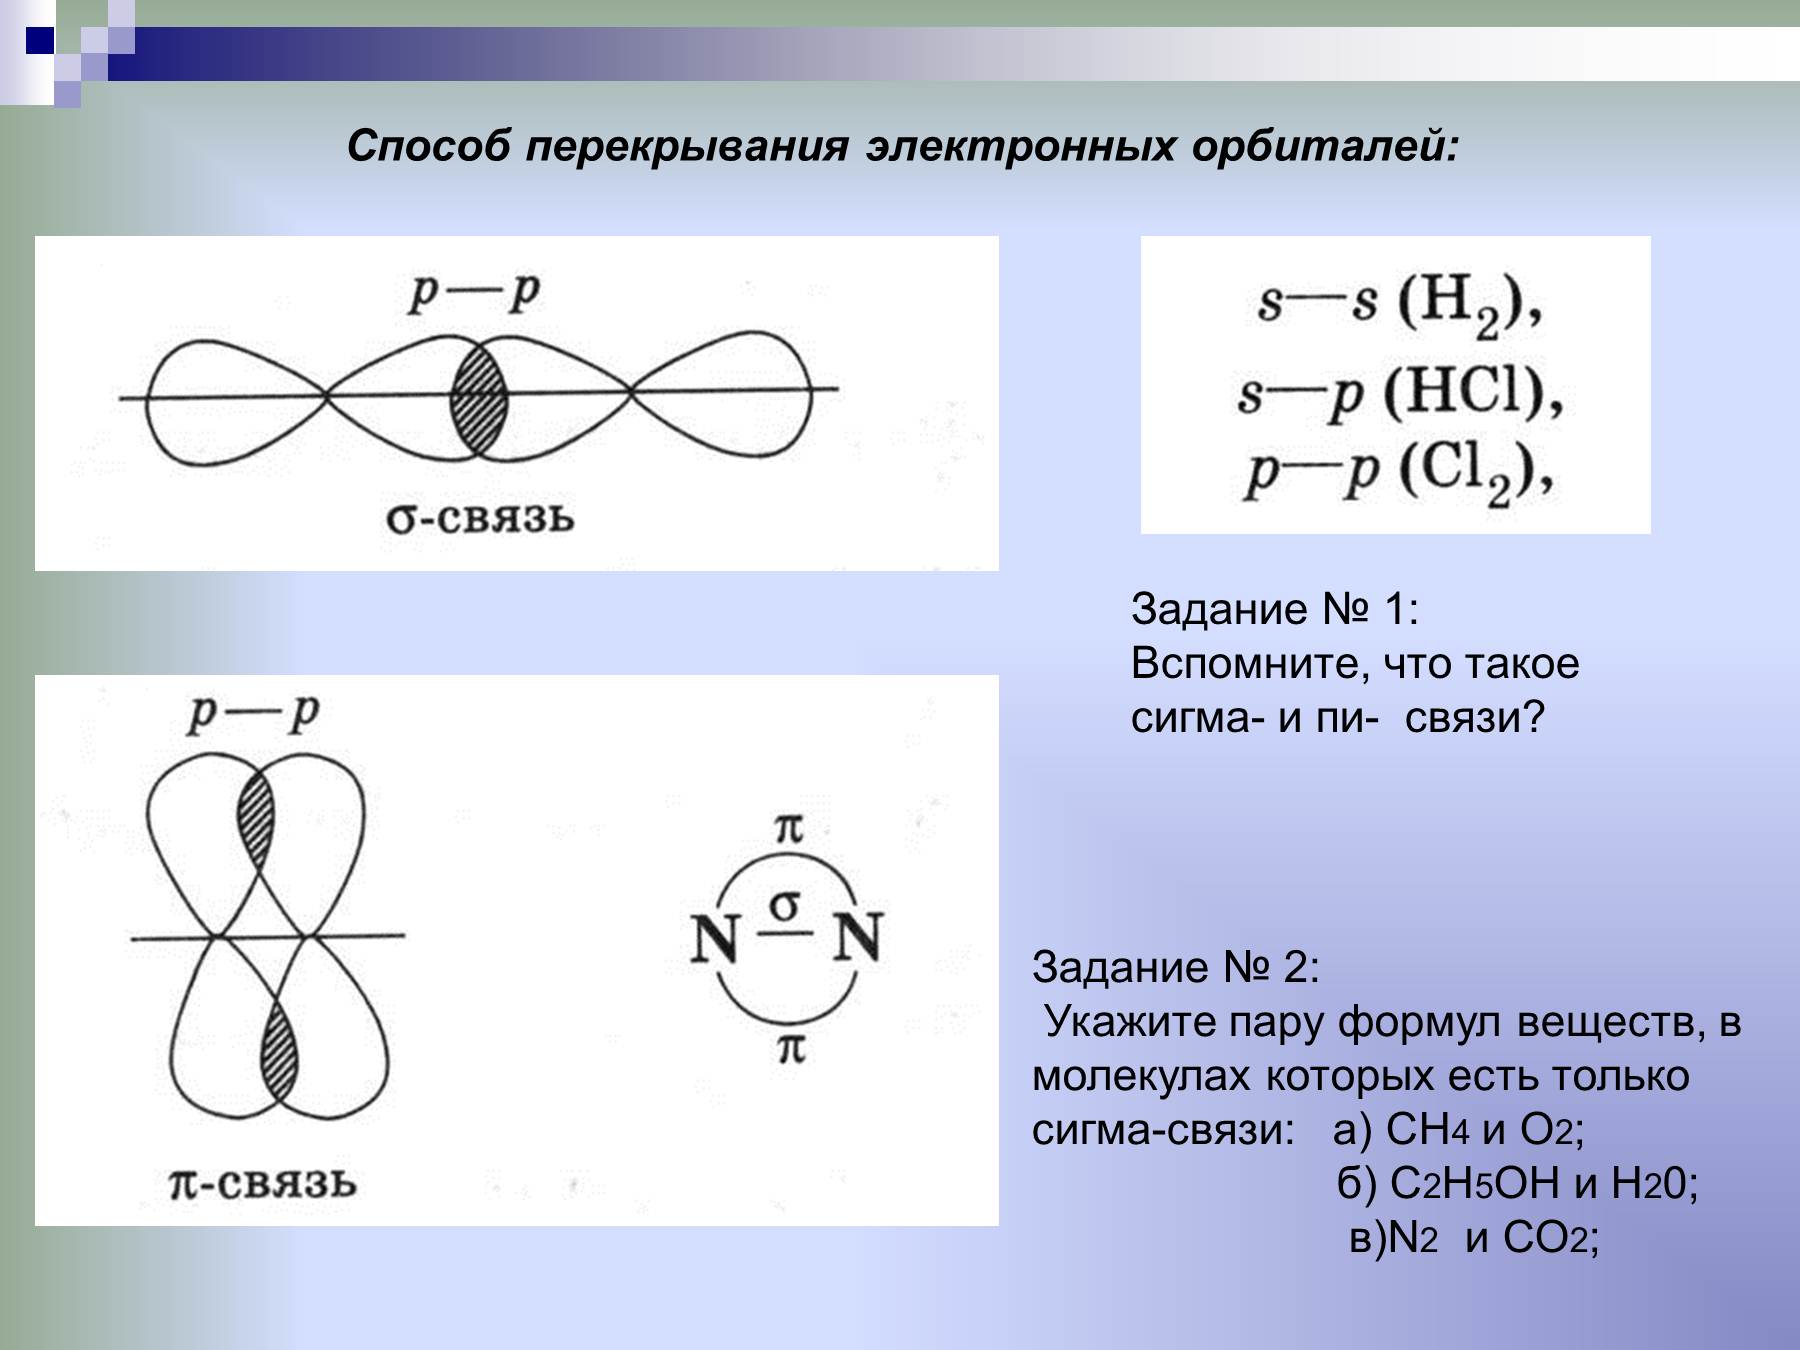 Сигма соединение. Типы химических связей пи и Сигма. Схема образования Сигма связи. Способы перекрывания электронных орбиталей (Сигма, пи). Схема перекрывания электронных облаков i2.